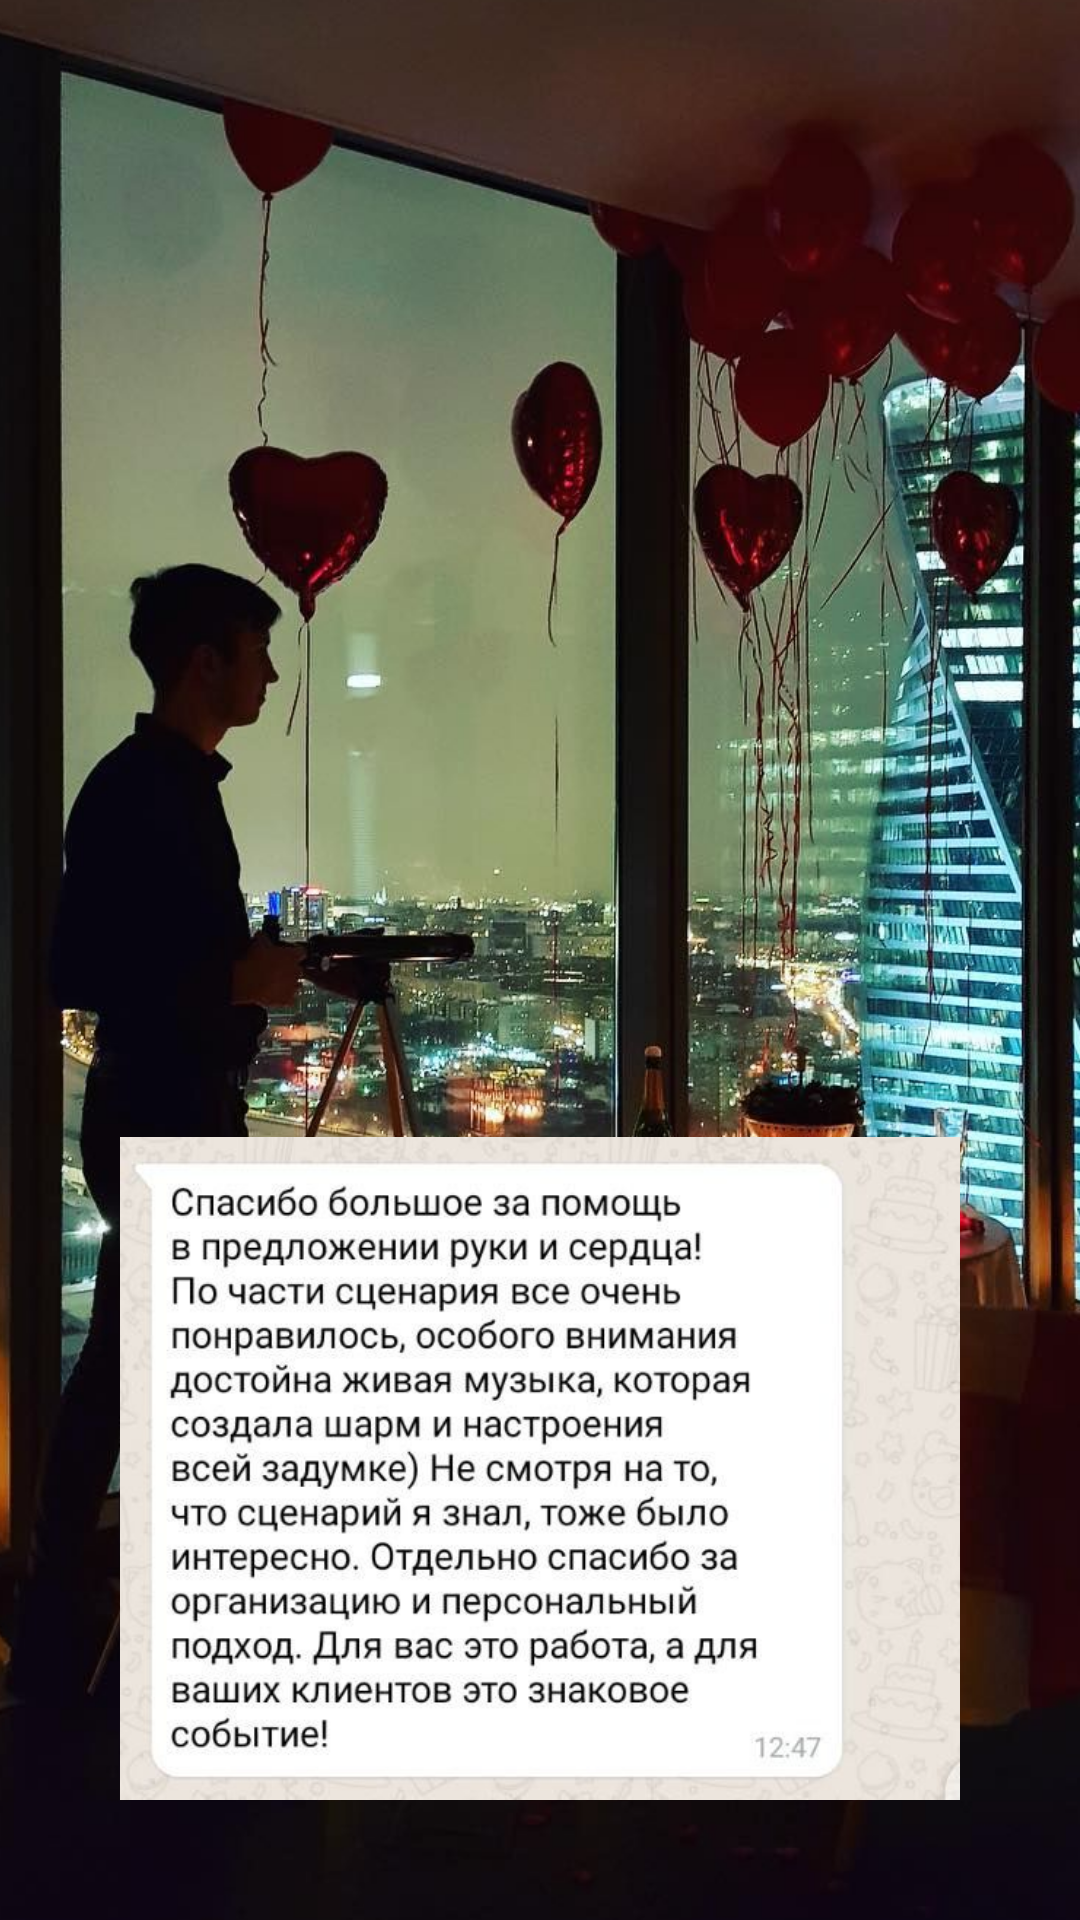 Организация предложения руки и сердца в Барнауле
от компании Pandaevent